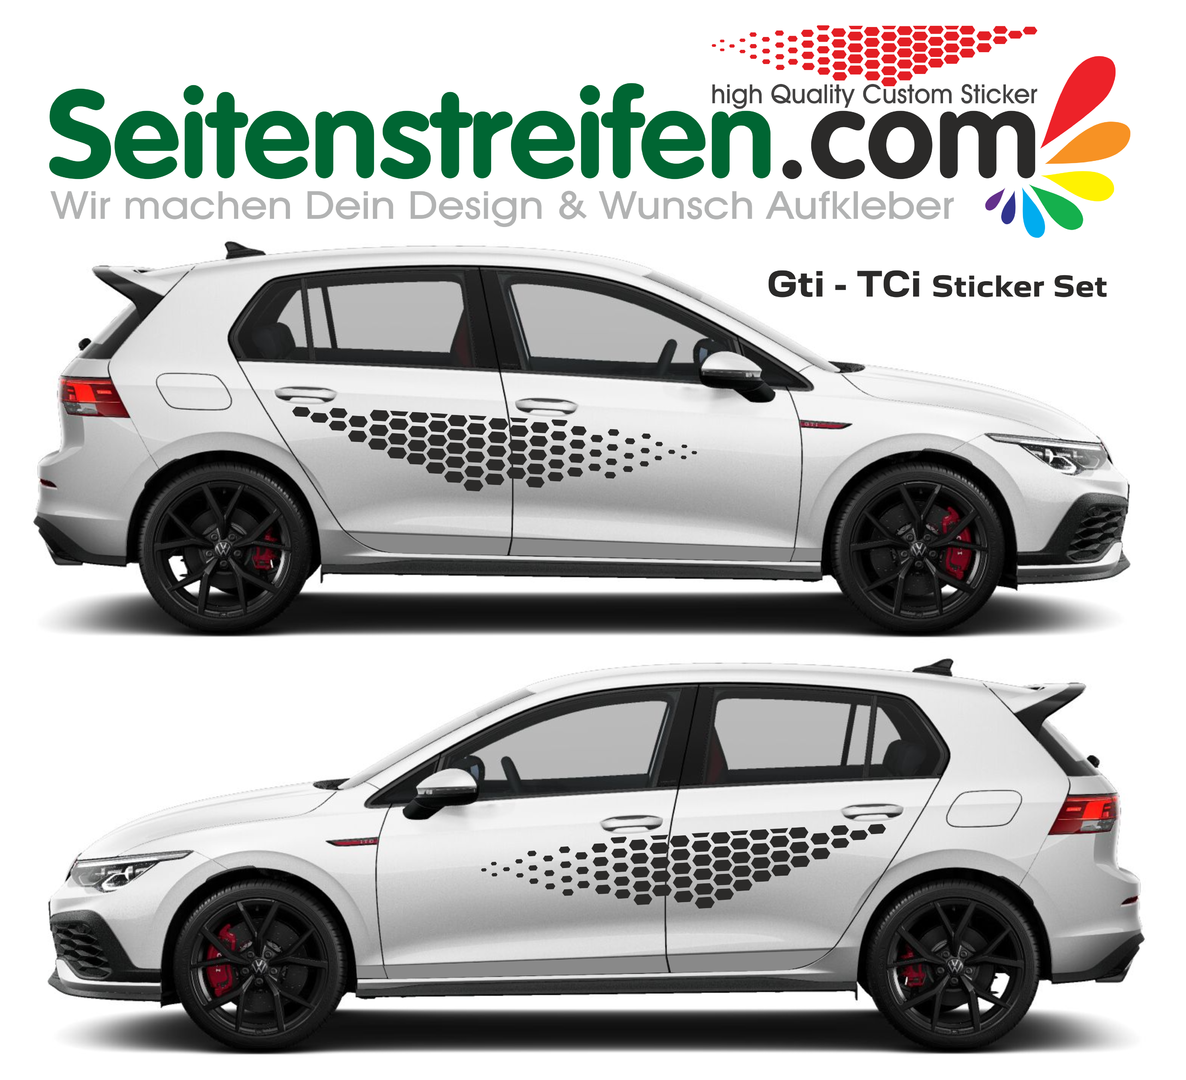 VW Golf GTI TCi sada bočních polepů - polepy - sticker set